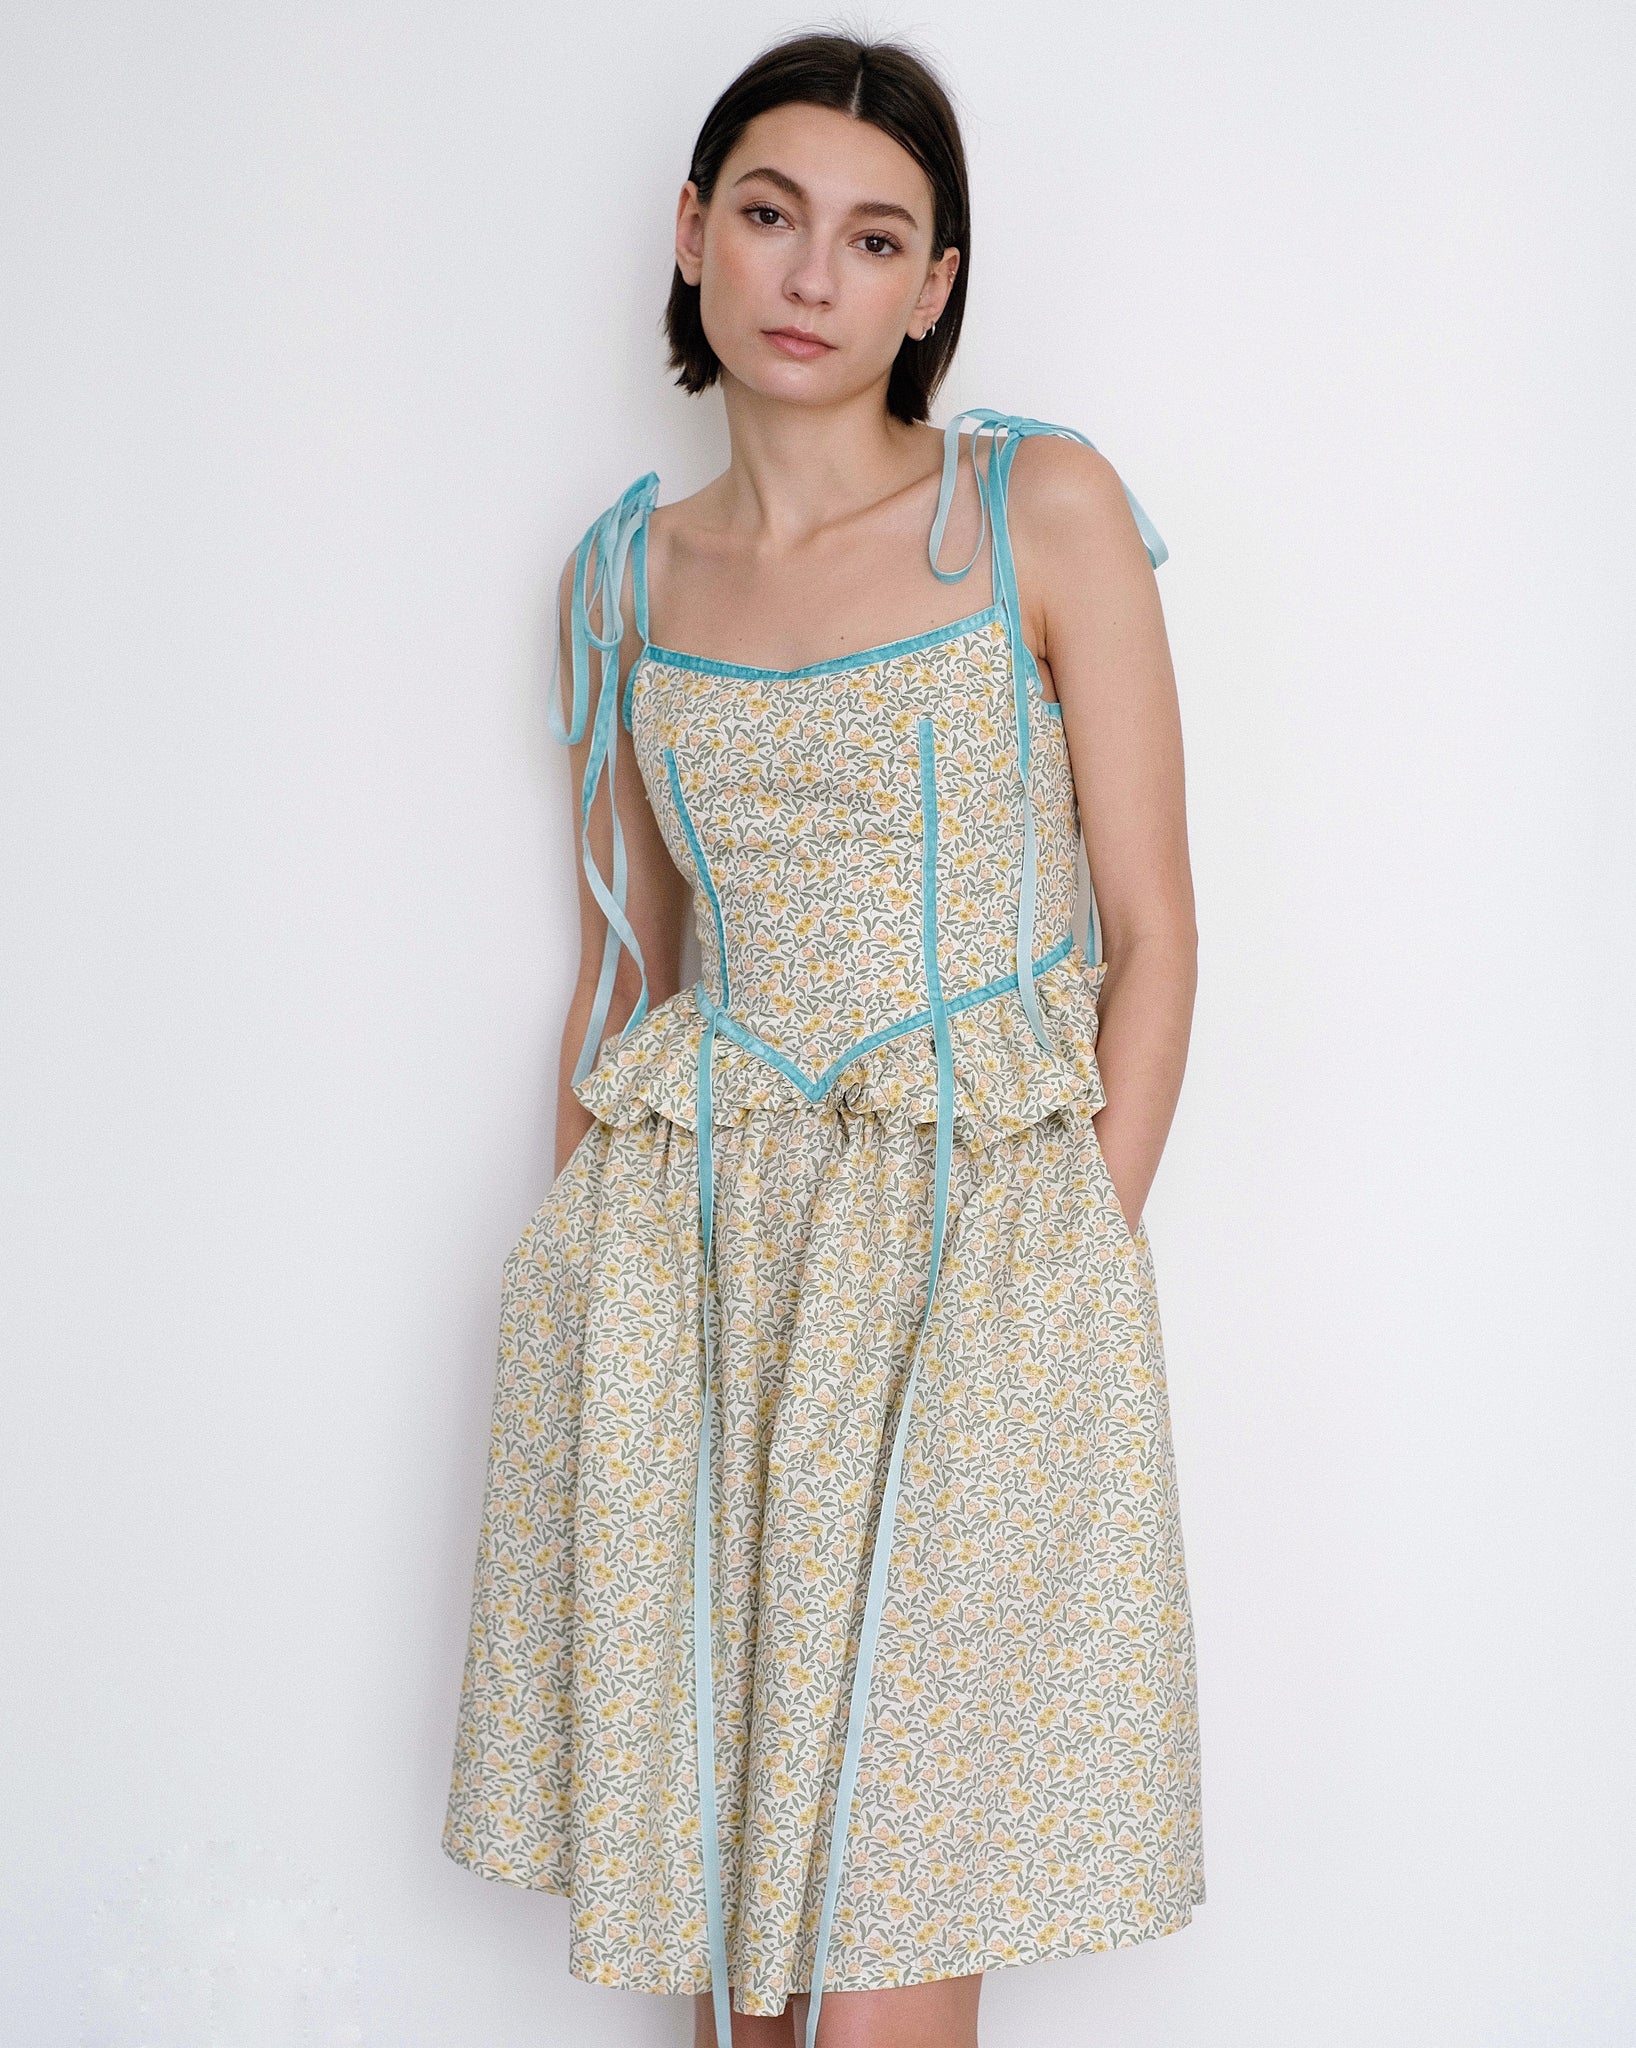 Eliza Faulkner Tessa floral print dress with velvet ribbons